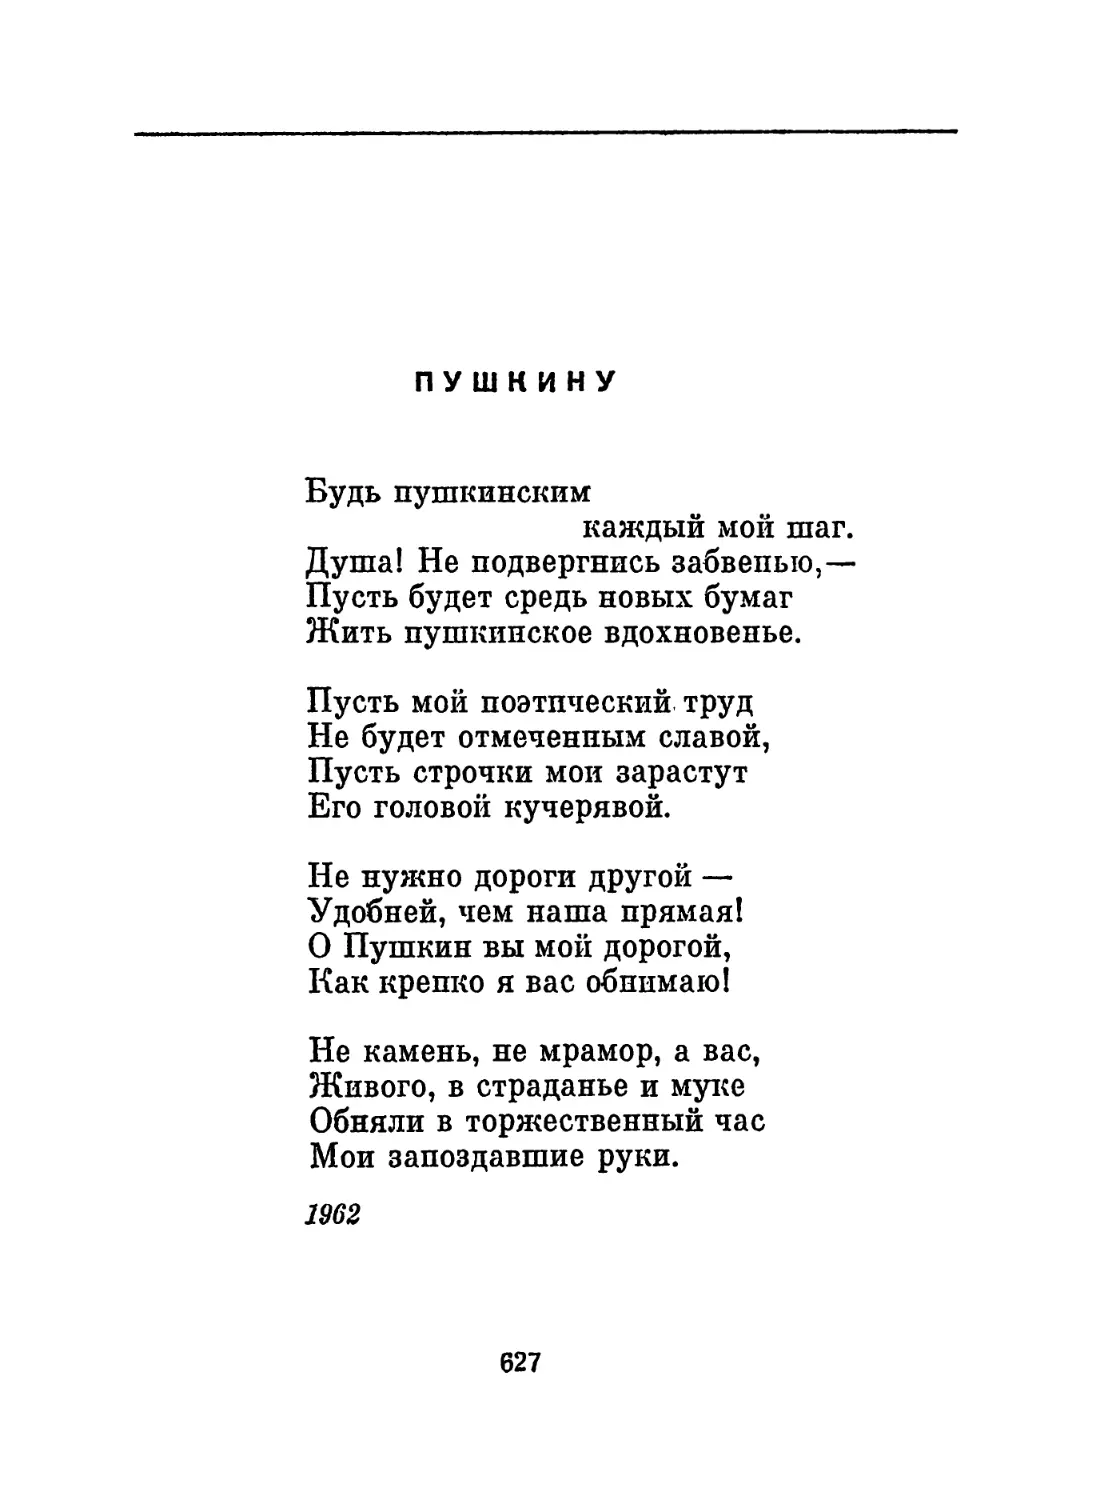 Пушкину